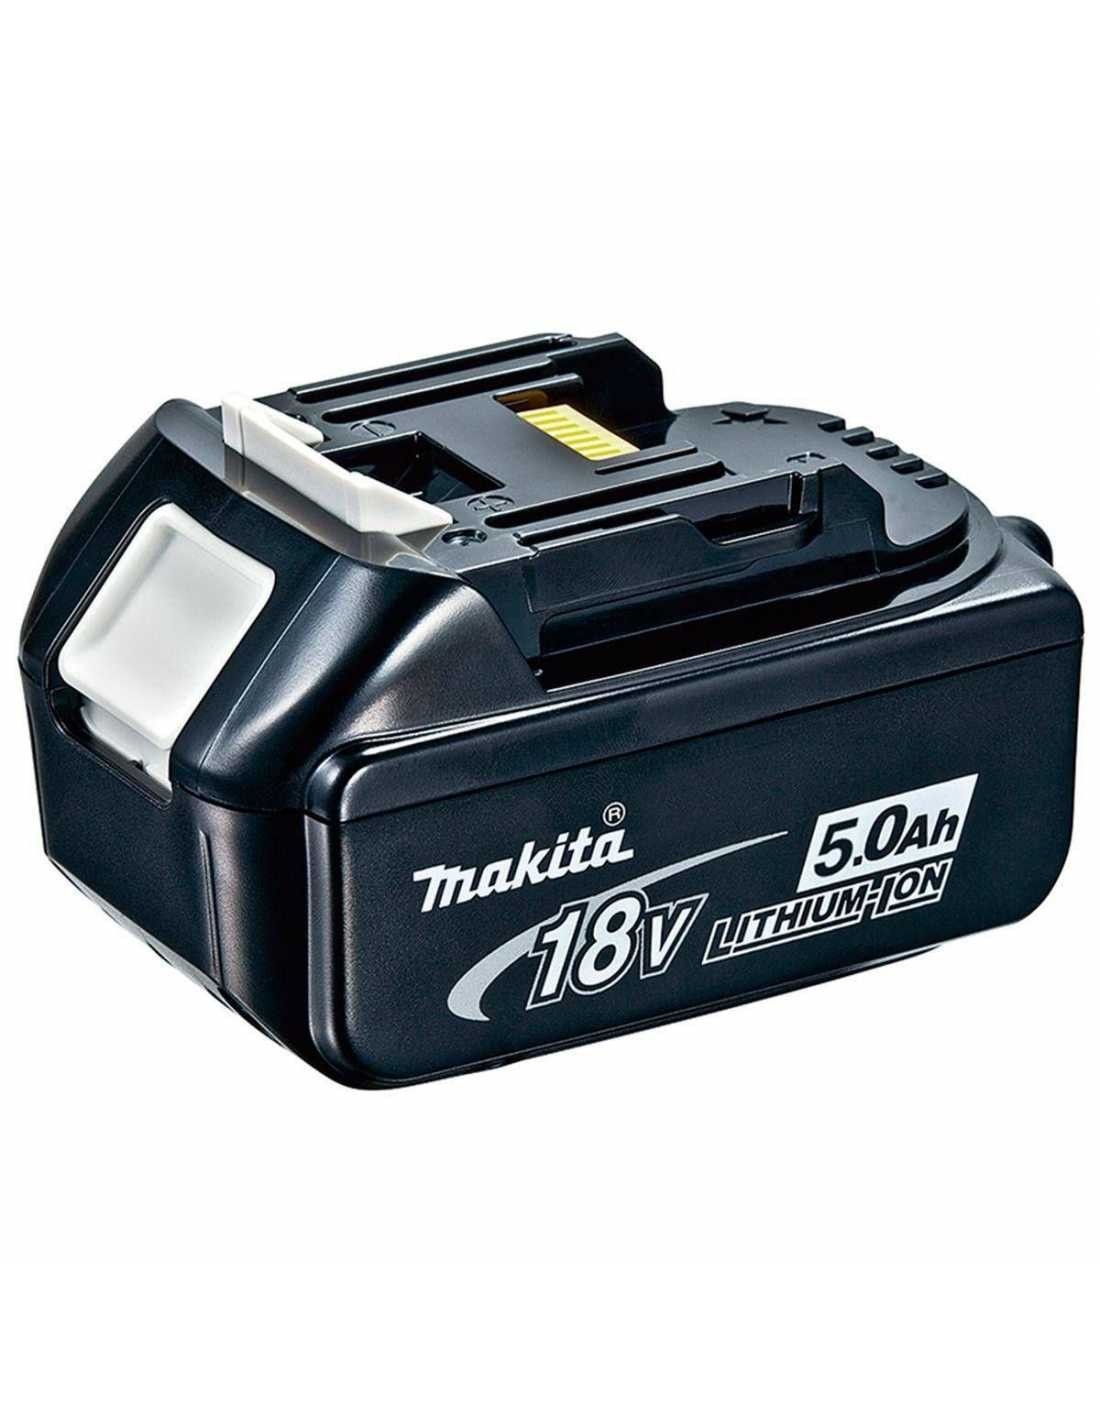 Makita-Set mit 11 Werkzeugen + 3 Schlägern + Ladegerät + 2 Taschen DLX1171BL3